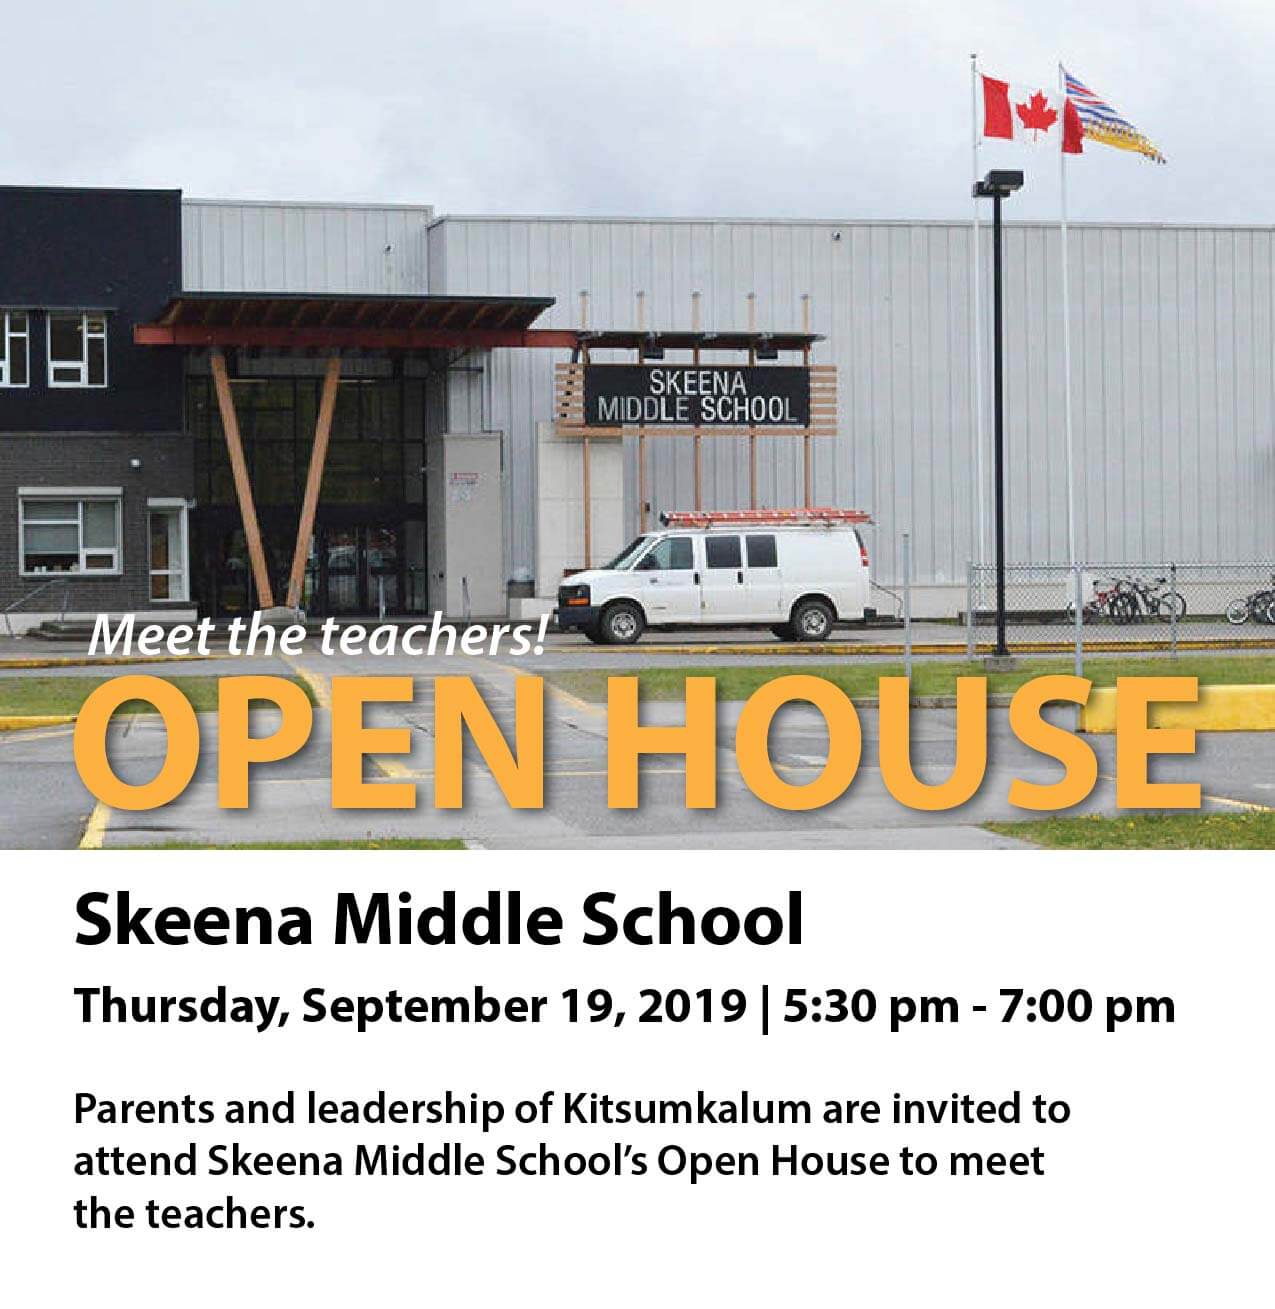 Skeena Middle School Open House SEPT 19